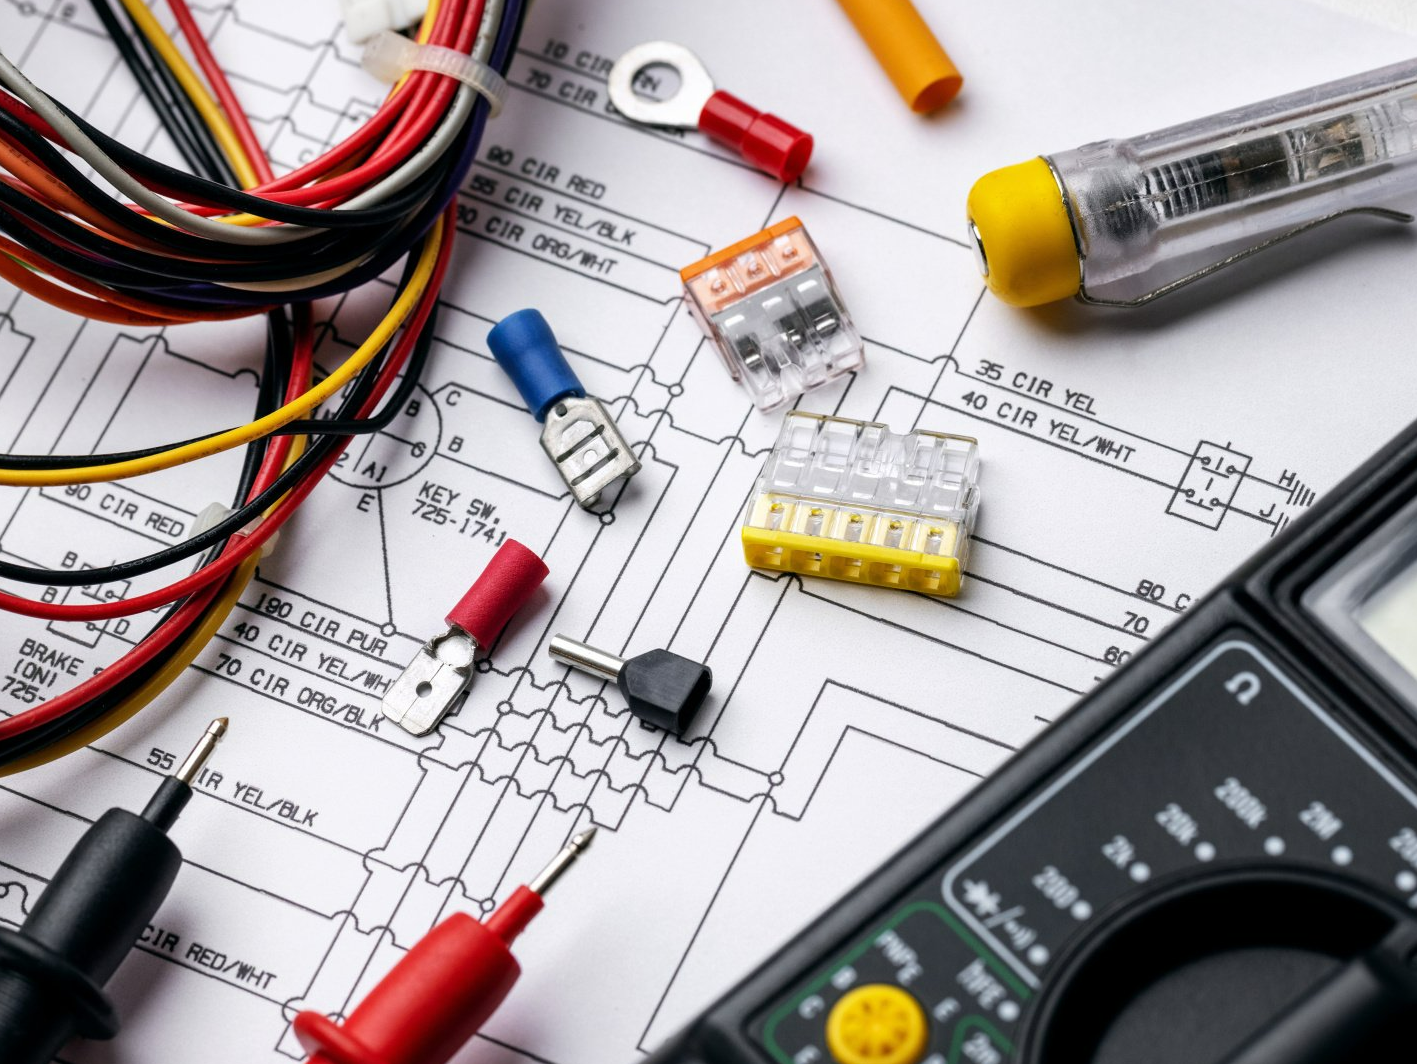 Des câbles électriques, un ampèremètre, un plan électrique et des adaptateurs électriques